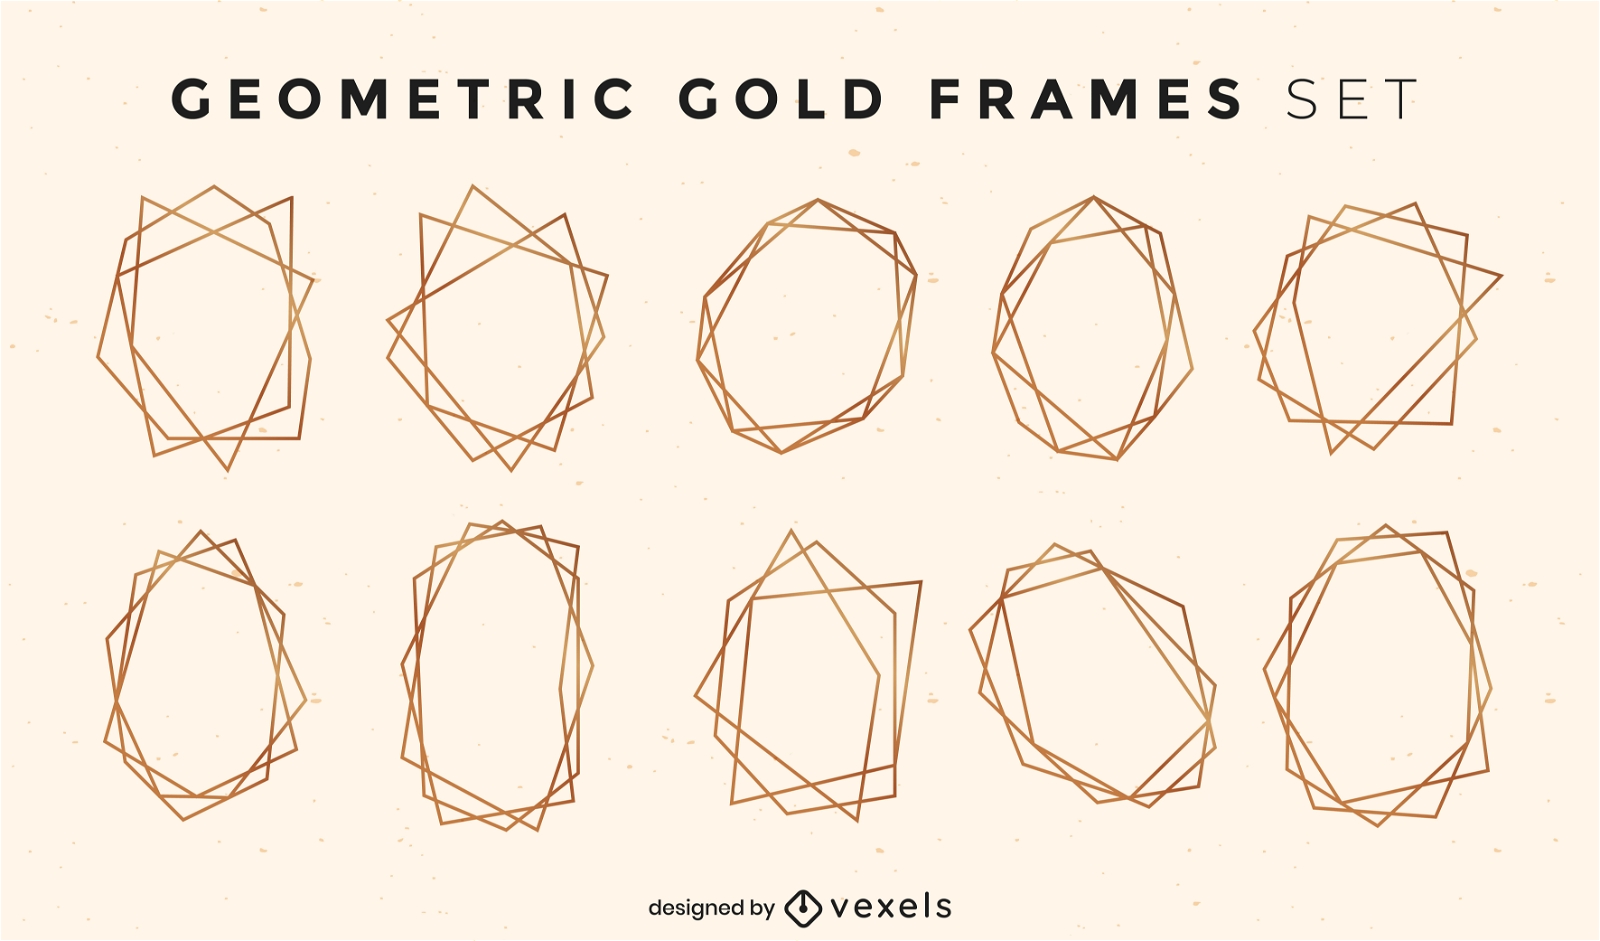 Conjunto de decoración de marcos de estilo geométrico dorado.